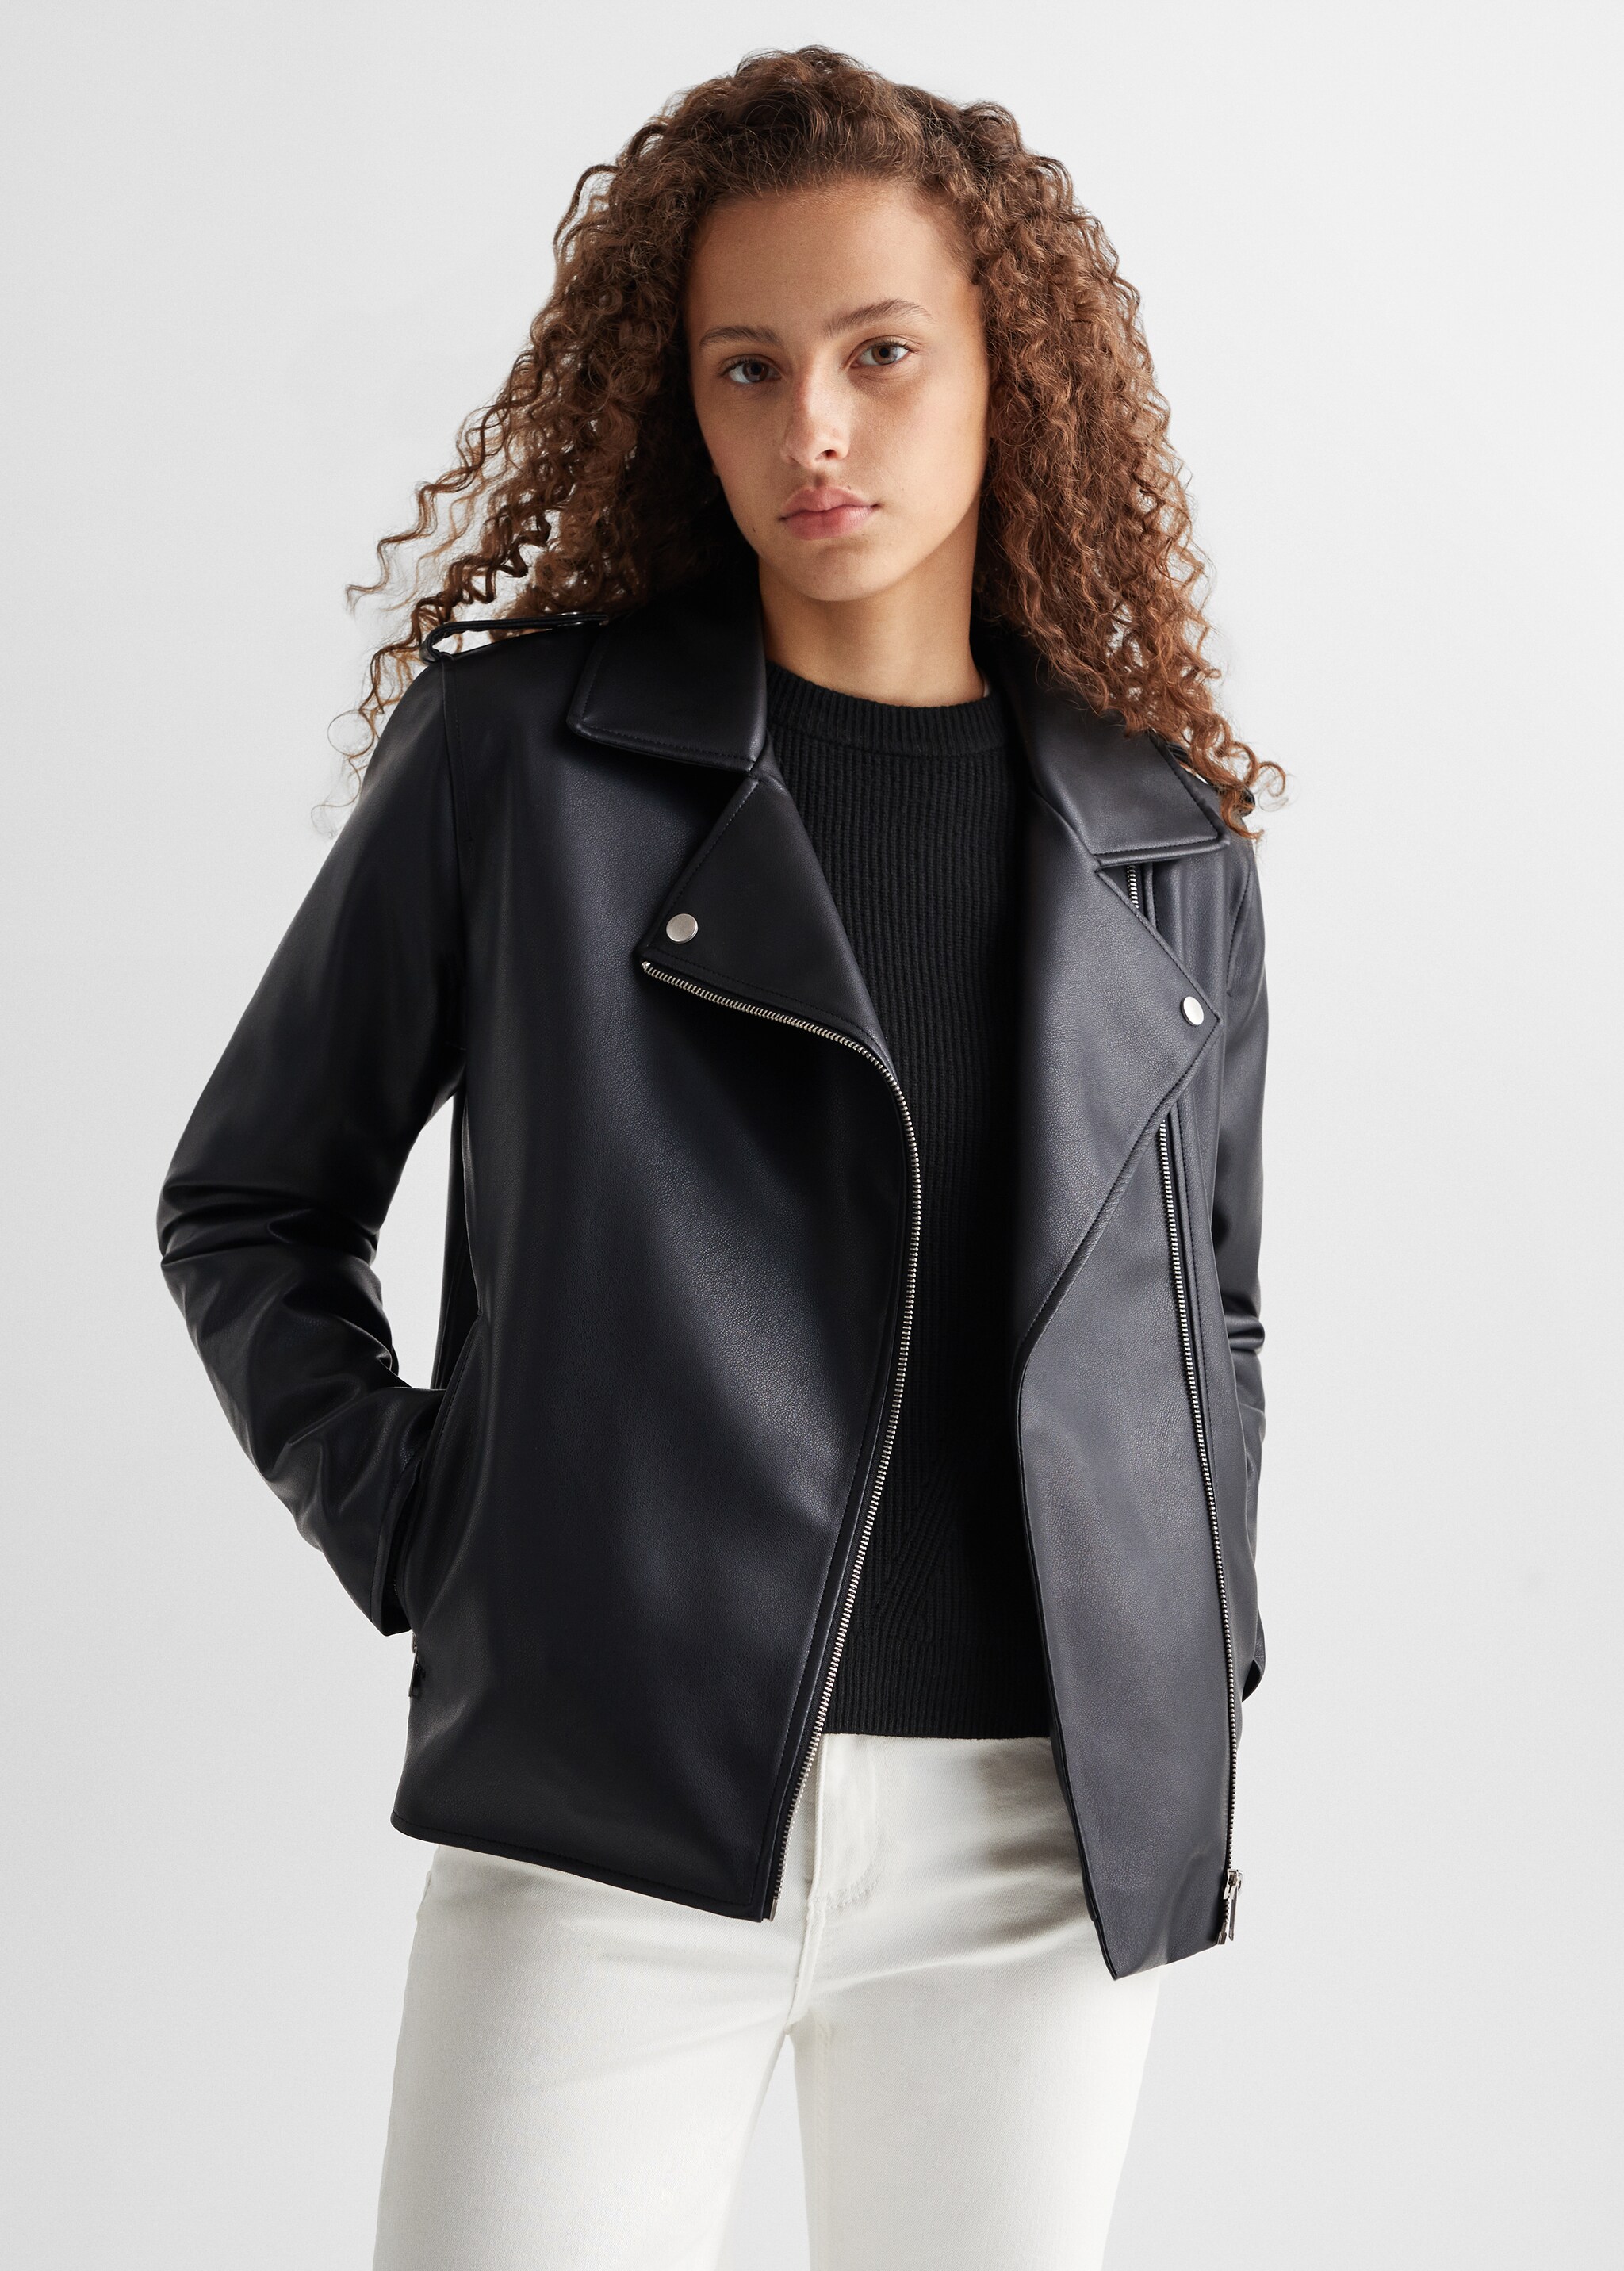 Faux-leather jacket - Medium plane